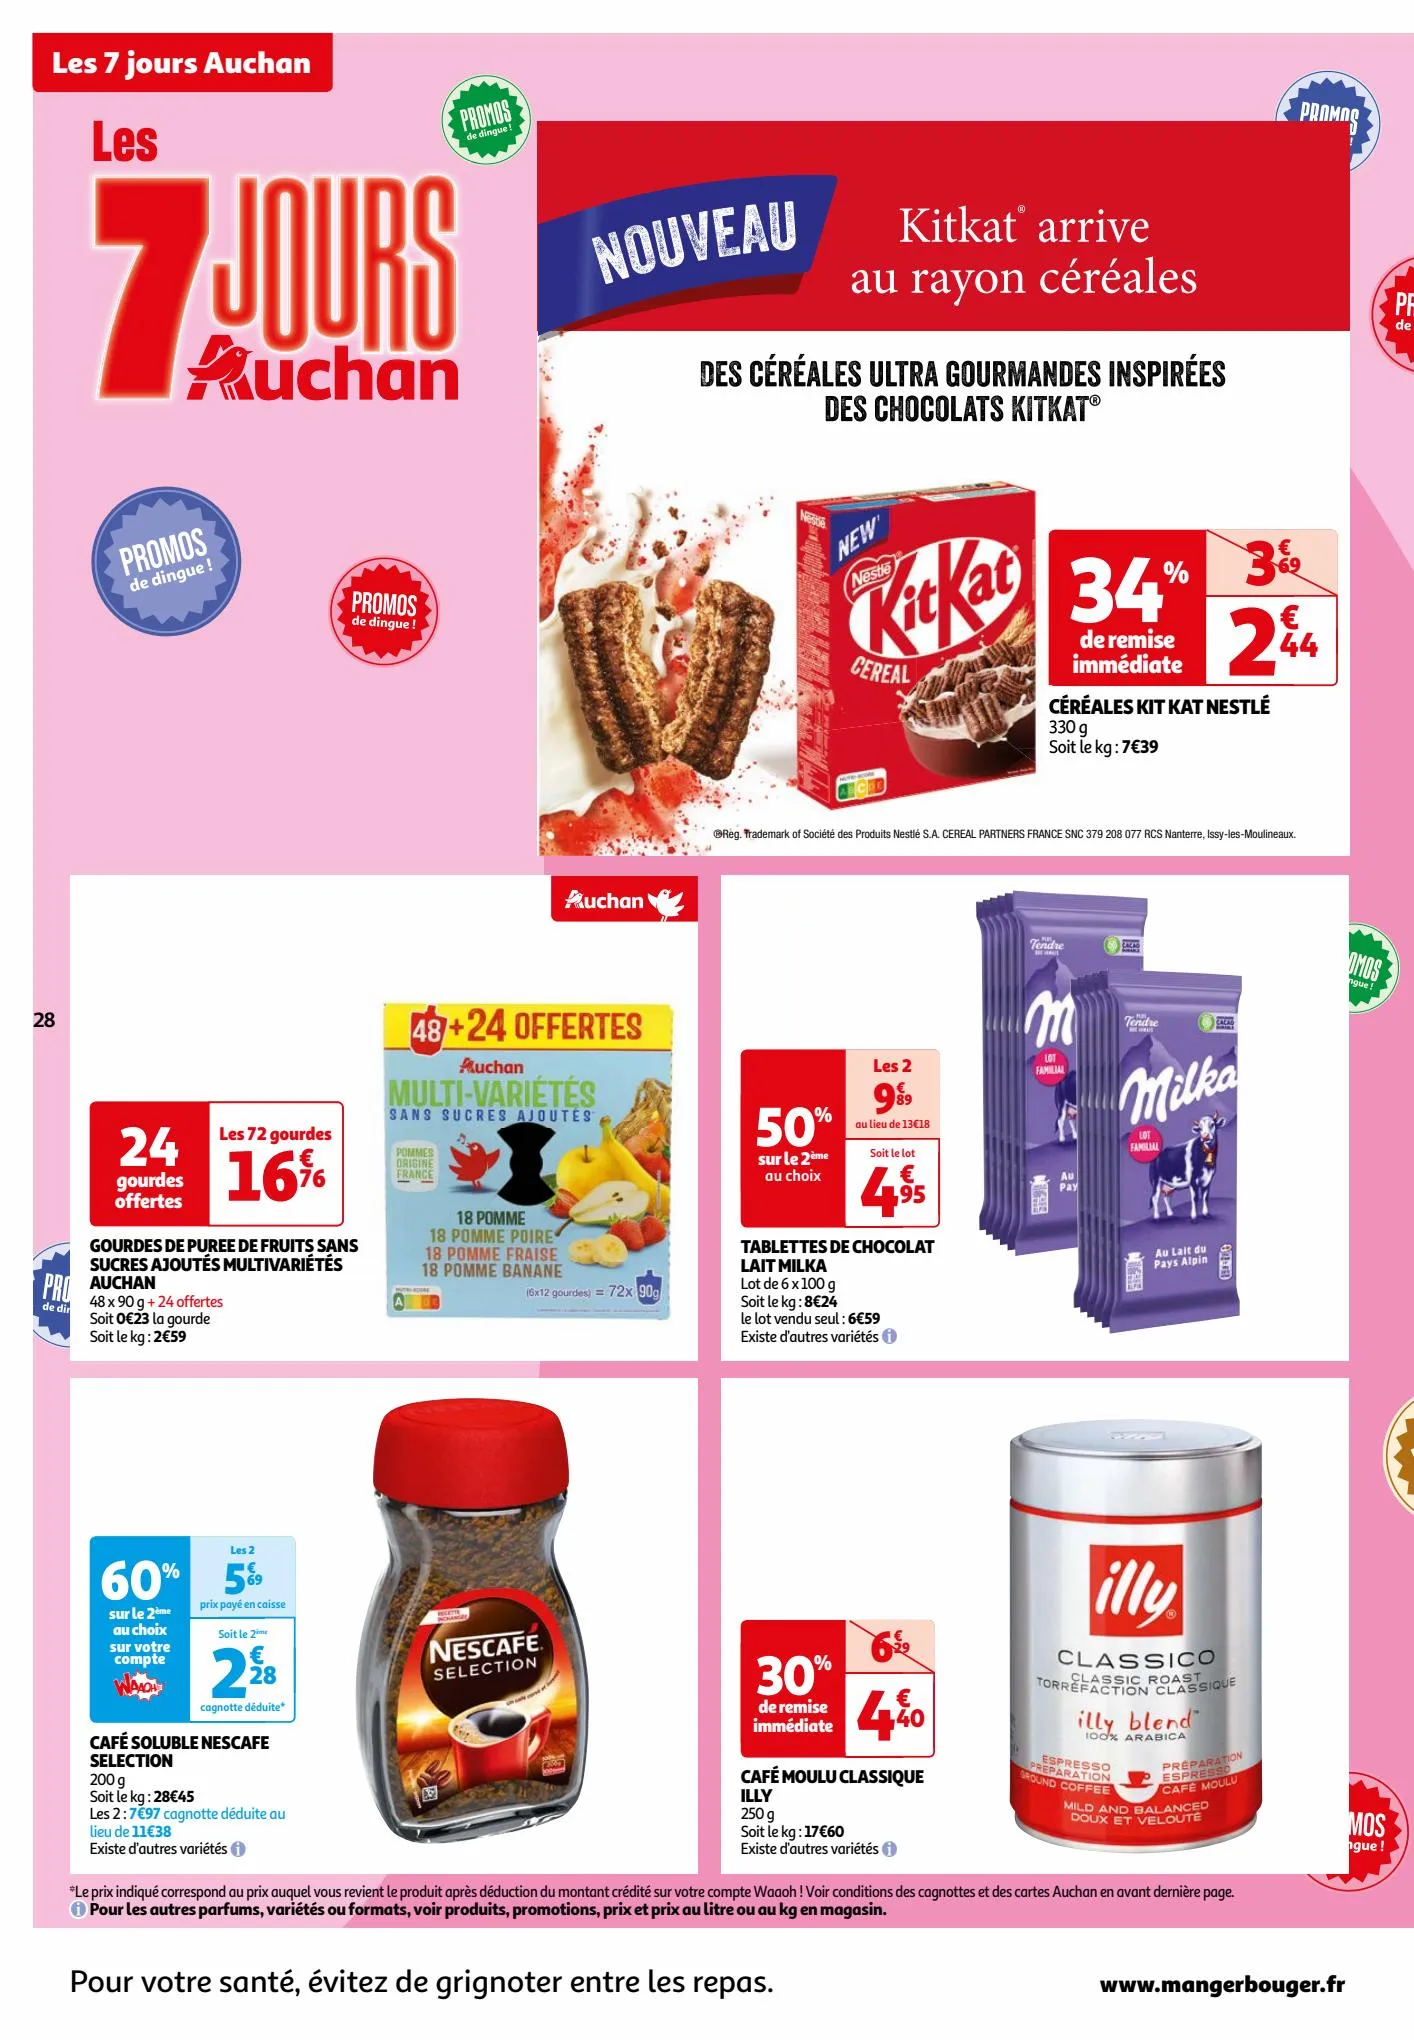 Catalogue Les 7 jours Auchan, page 00028